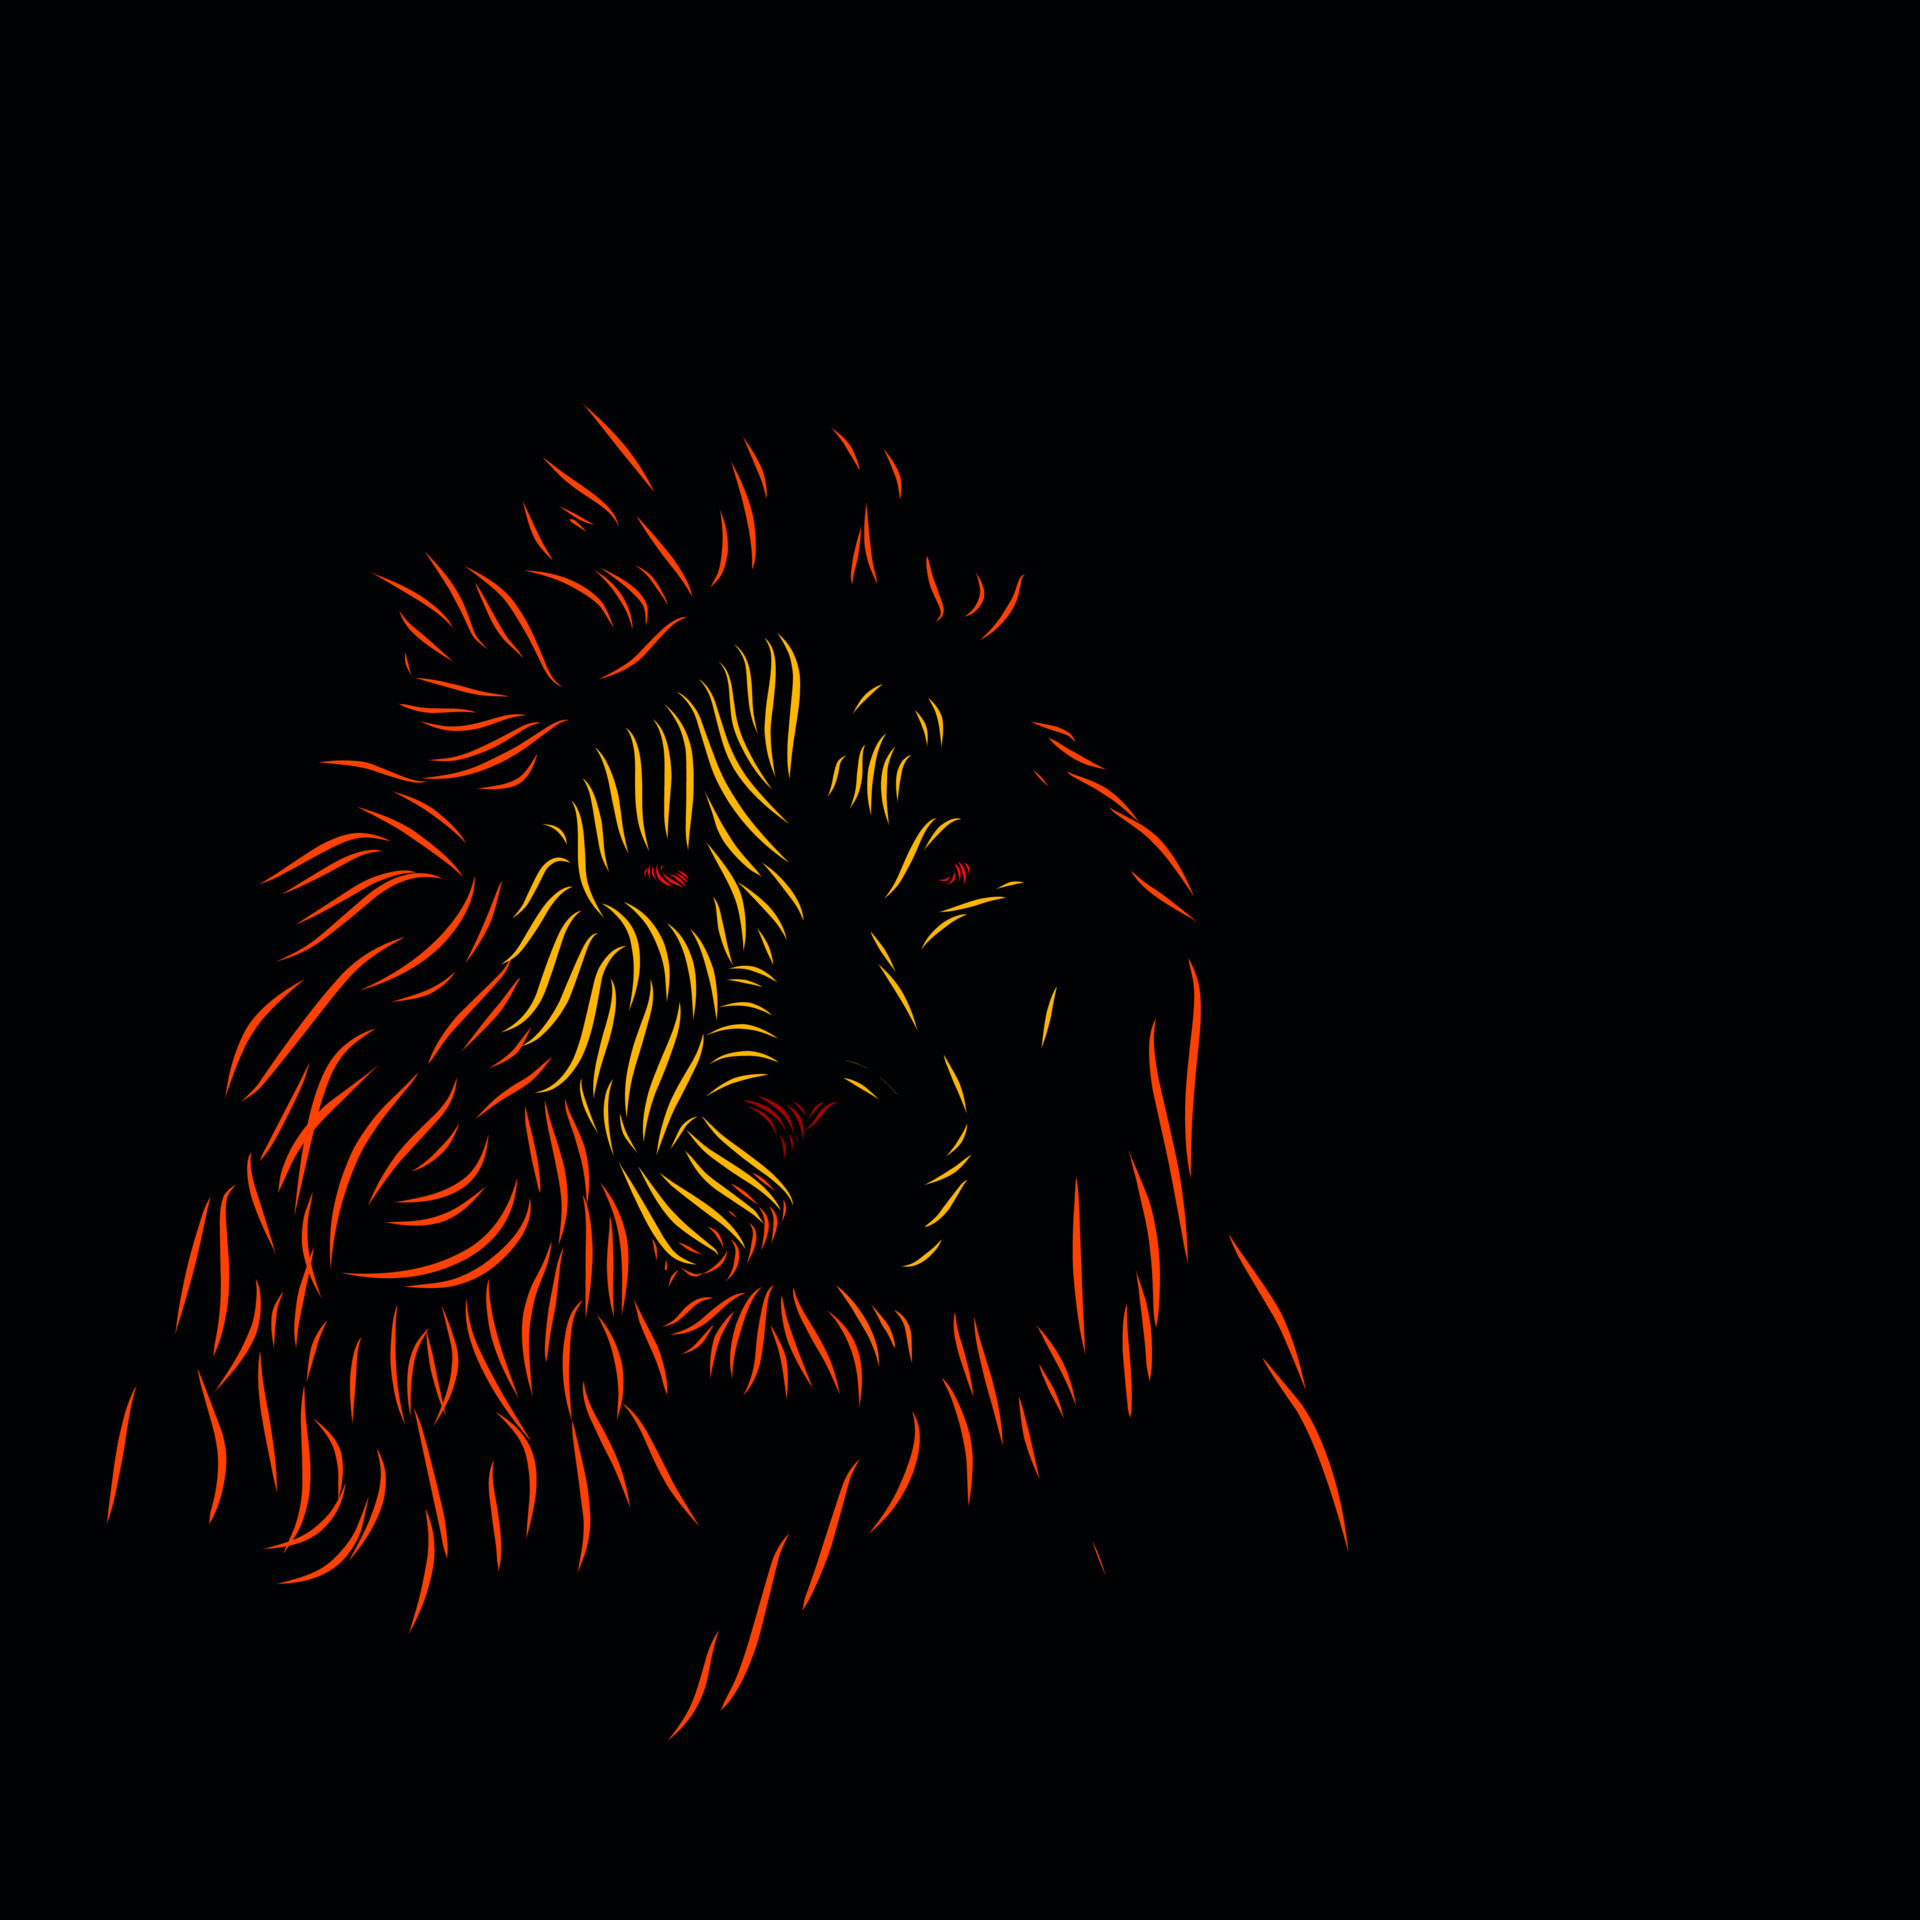 Vẻ đẹp của hình ảnh chú sư tử đầy uy lực trong hoàng hậu đêm đã được tái hiện bằng hình ảnh chân dung sư tử đen nhánh. Khung cảnh rực rỡ của đêm hoang dã càng được làm nổi bật bởi vẻ đẹp rực rỡ của thiết kế động vật hoang dã này.